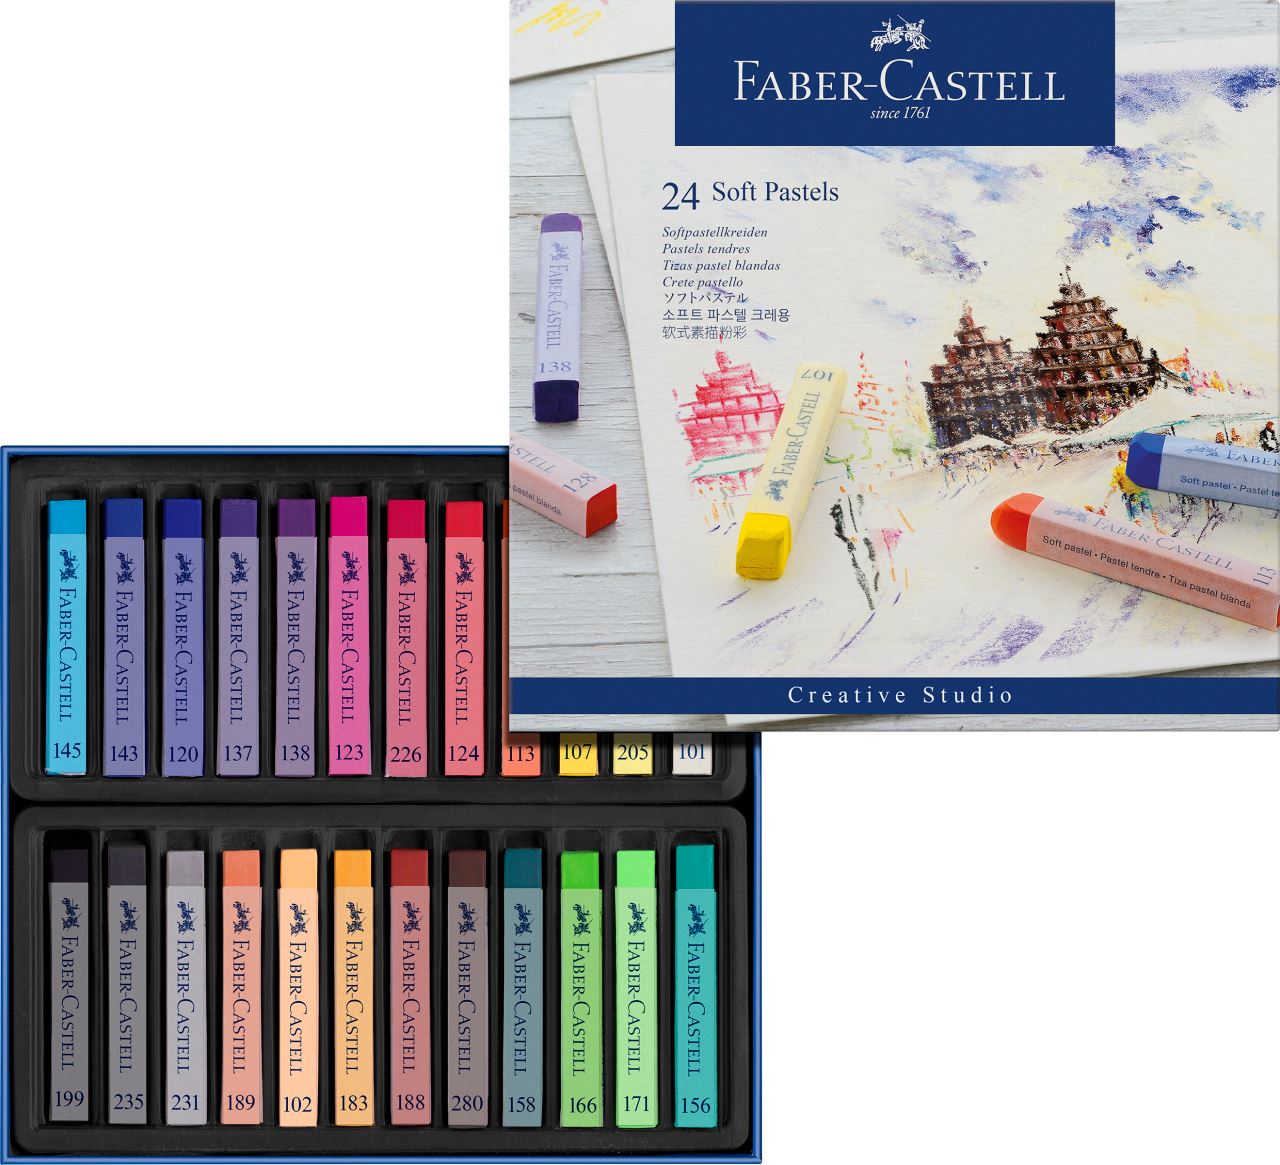 Faber-Castell - Estuche con 24 pasteles blandos